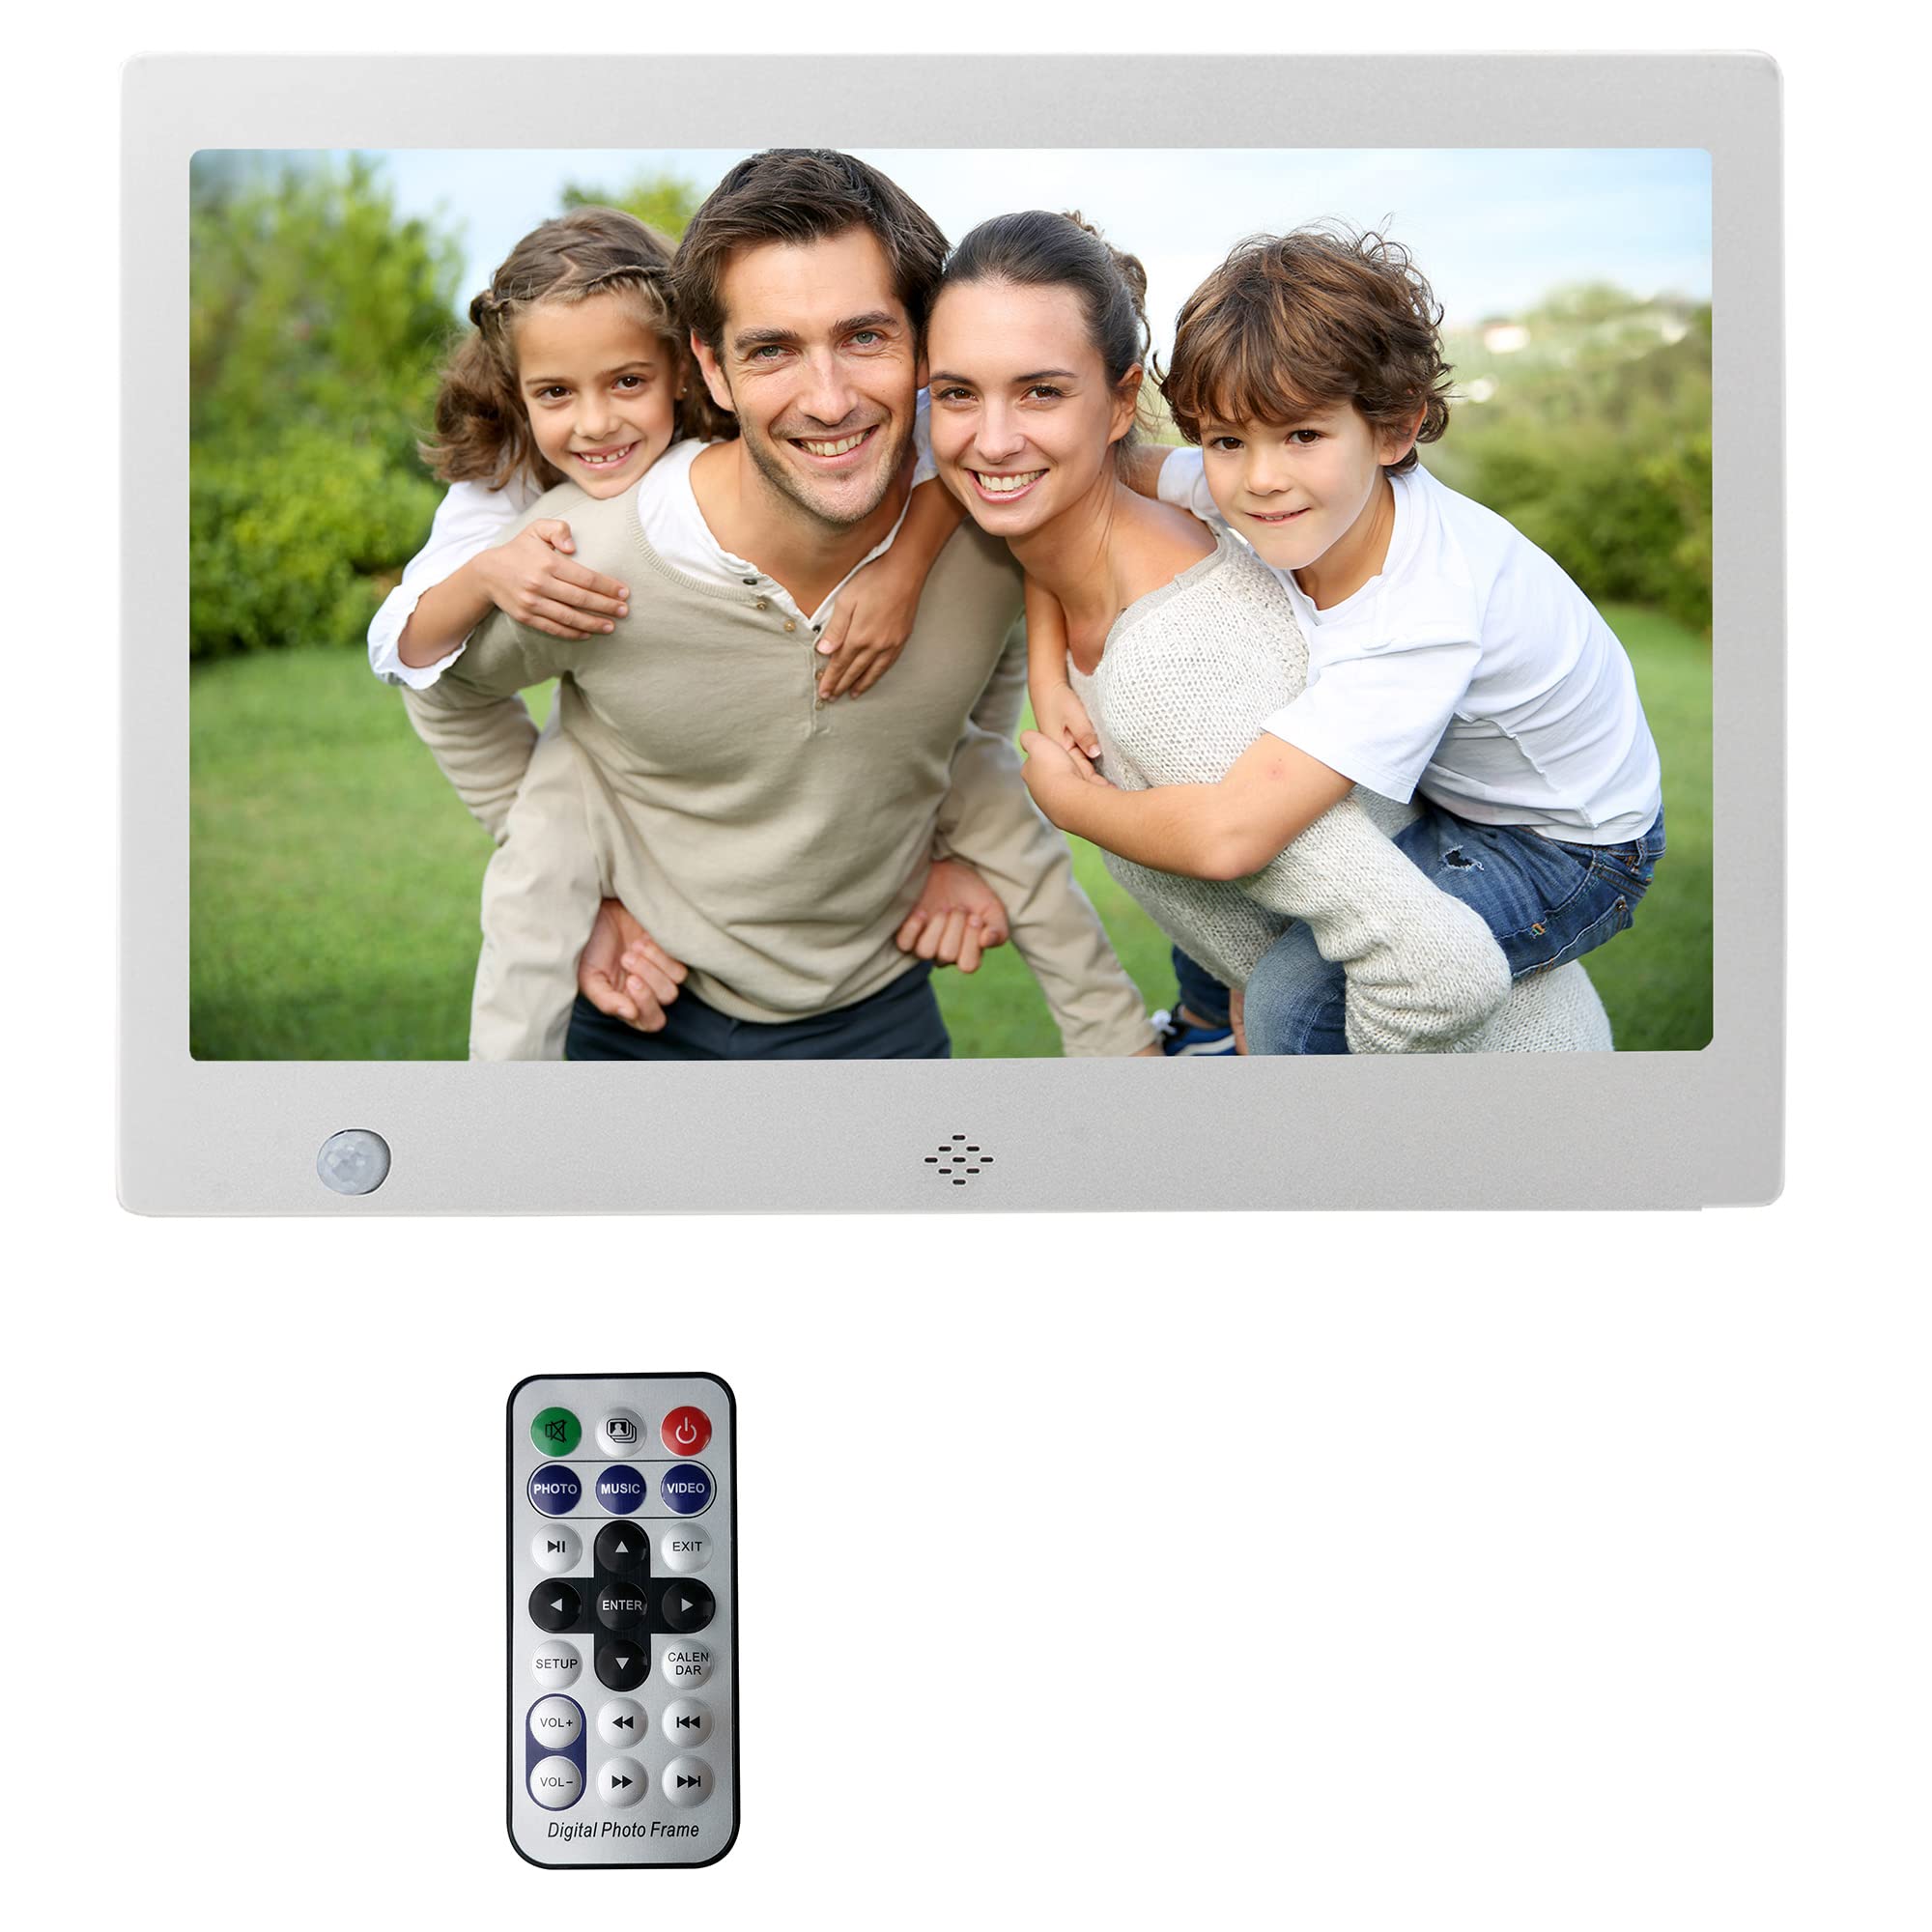 XORO DPF 10C1 - Digitaler Bilderrahmen mit 25,6 cm (10.1 Zoll) Display und SD Kartenleser, mit USB 2.0 Anschluss, Bewegungssensor, IR Steuerung, Silber